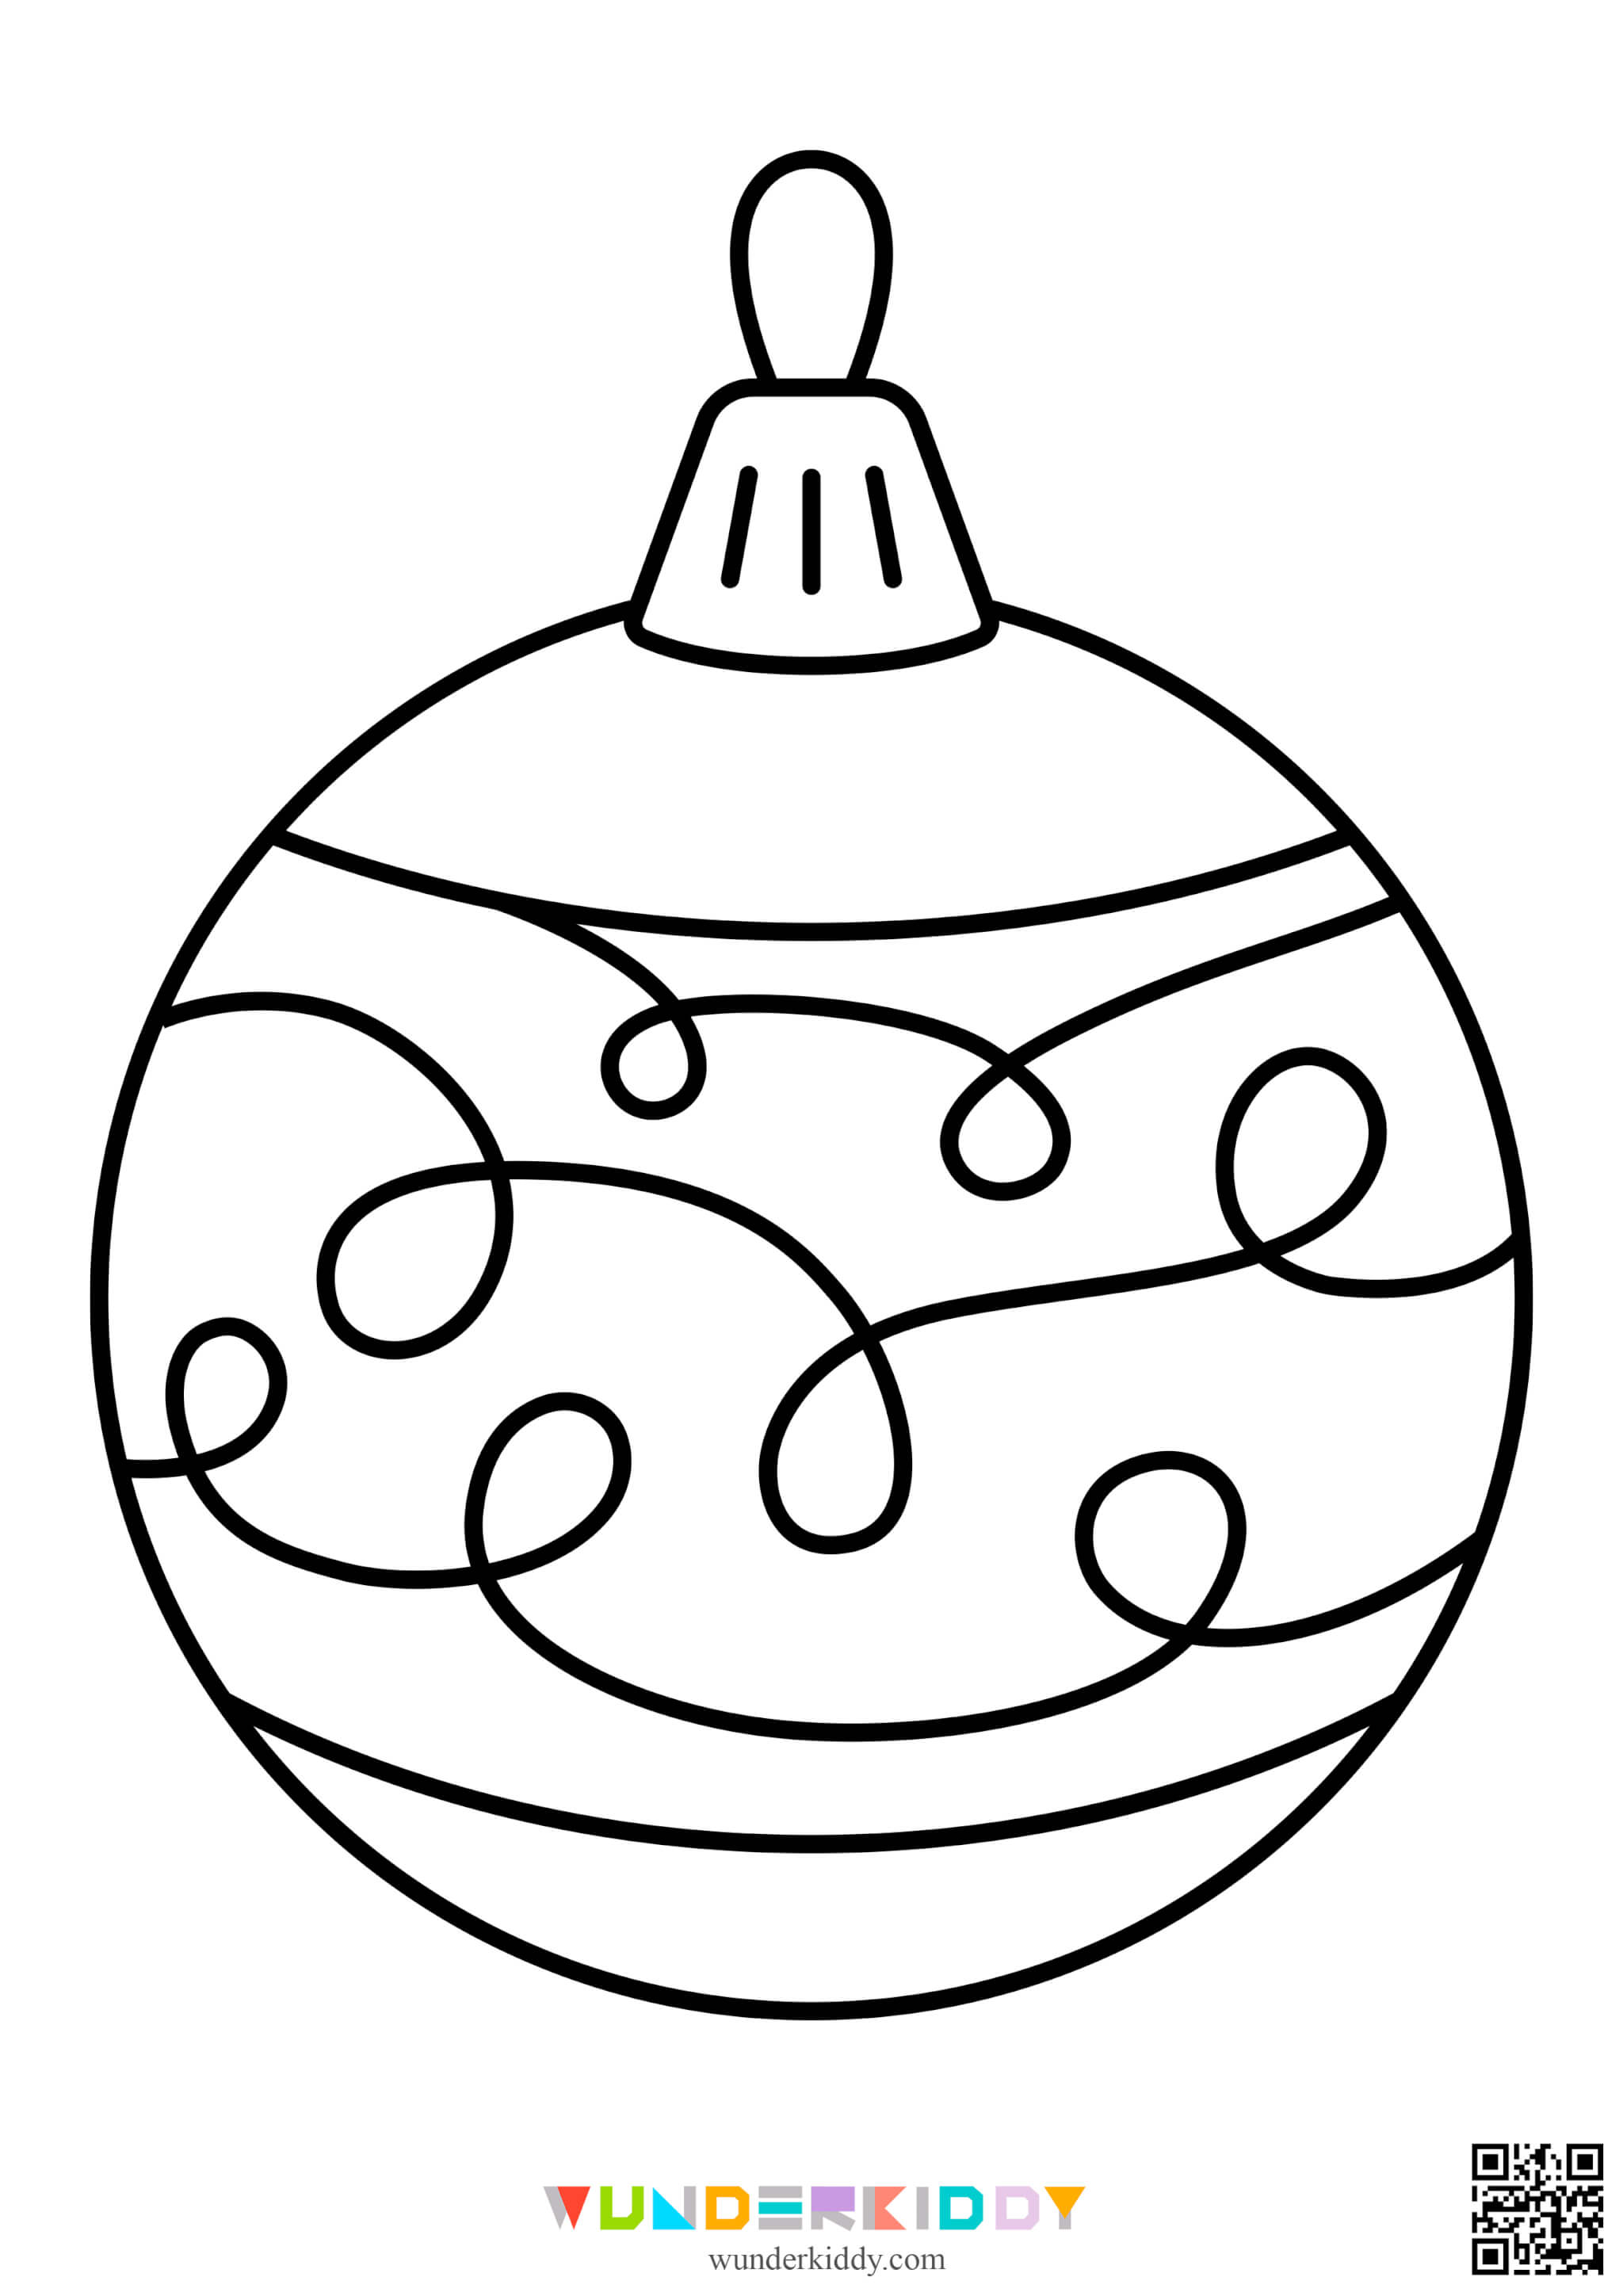 Розмальовки ялинкових кульок - Зображення 16